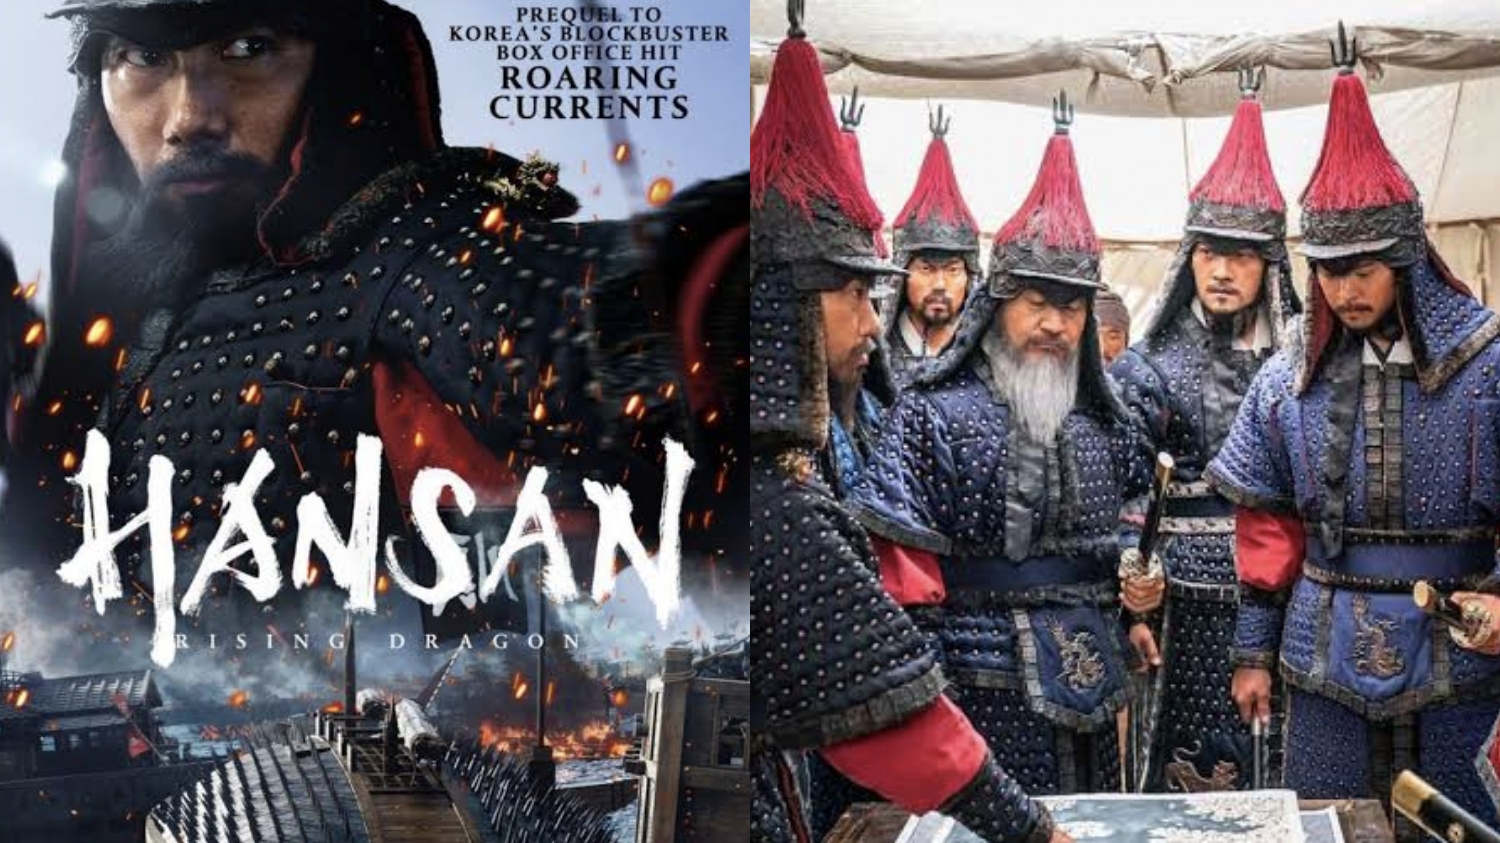 Yuk Nonton Film Korea Hansan Rising Dragon, Hadirkan Pertempuran Epik di Laut Lepas